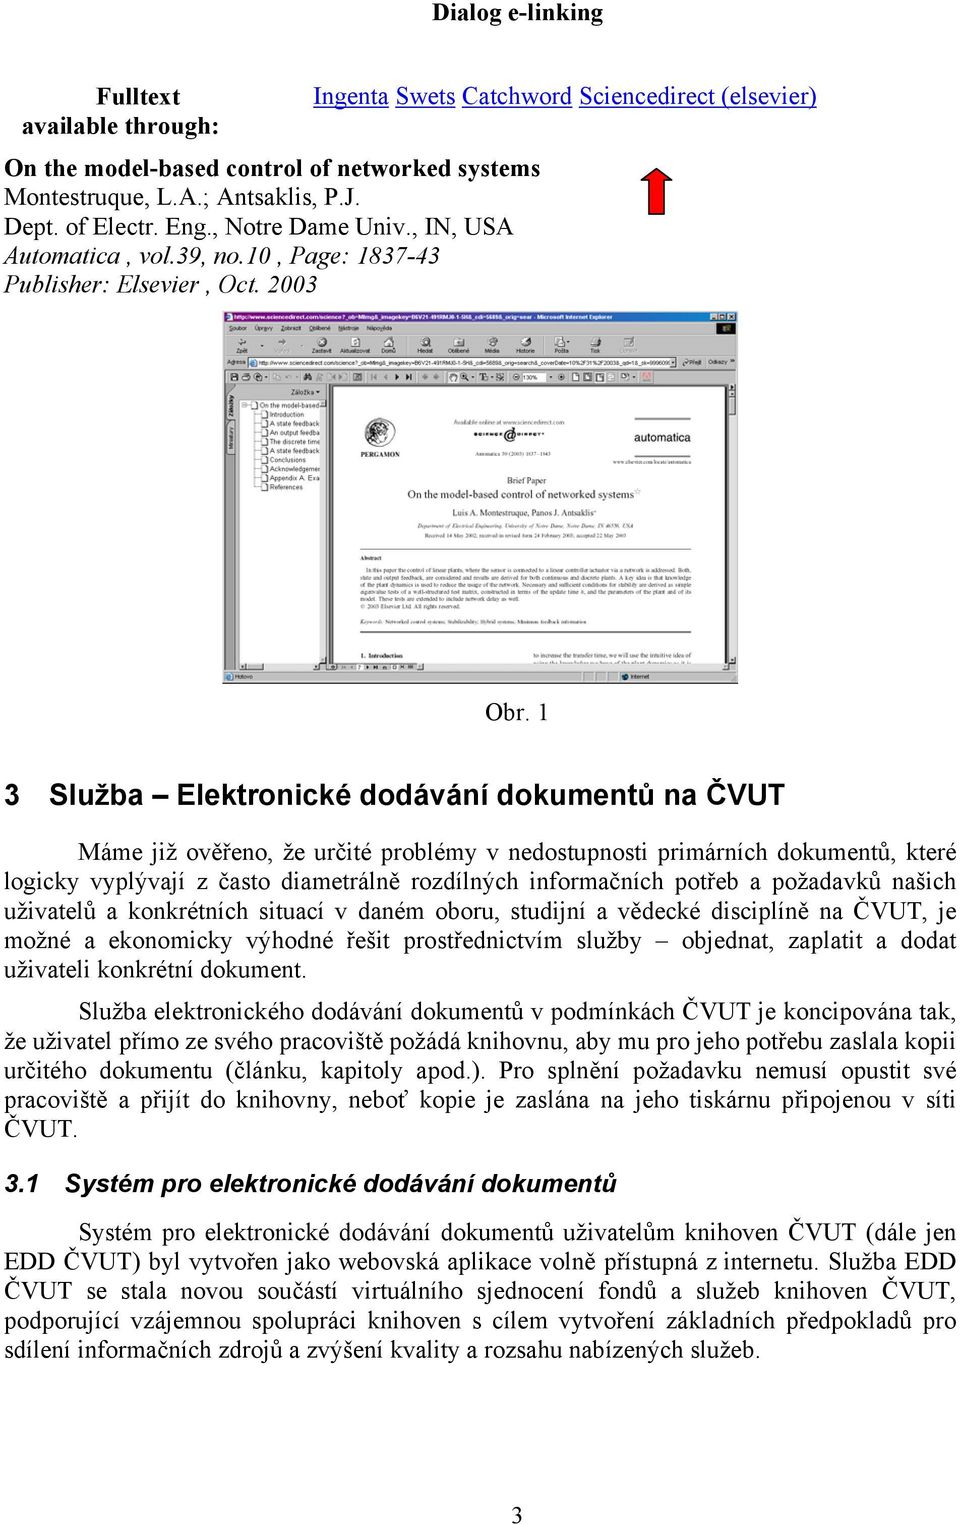 1 3 Služba Elektronické dodávání dokumentů na ČVUT Máme již ověřeno, že určité problémy v nedostupnosti primárních dokumentů, které logicky vyplývají z často diametrálně rozdílných informačních